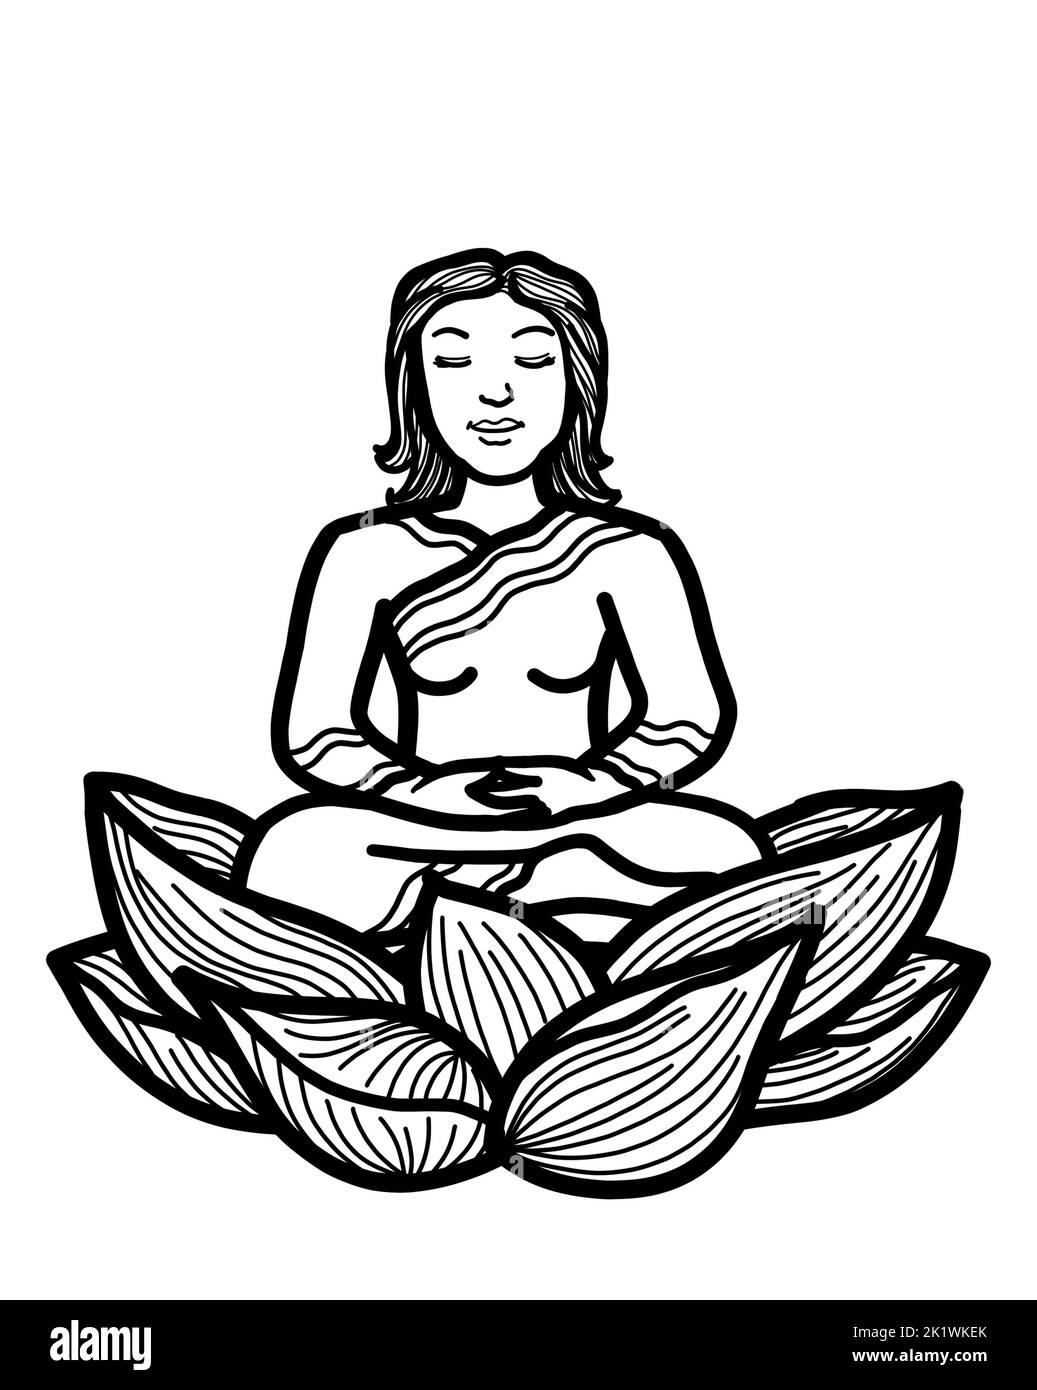 Eine junge kaukasische Frau, die in Lotushaltung sitzt, meditiert. Buddhistische Meditationspraxis für Achtsamkeit, Frieden, Harmonie und Wohlbefinden. Stockfoto